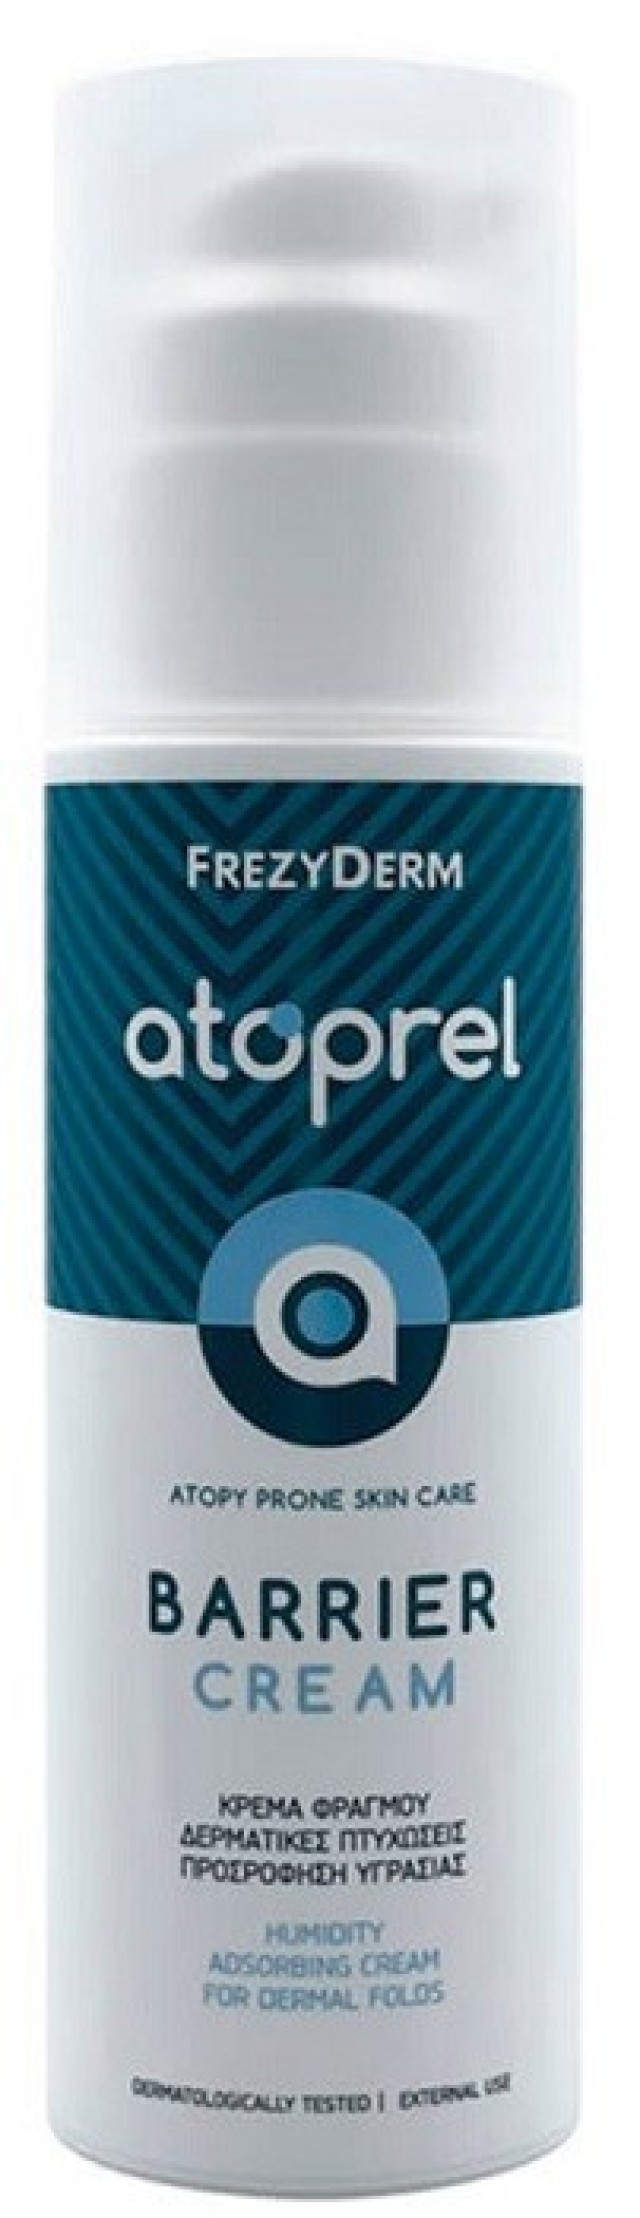 Frezyderm Atoprel Barrier Cream Κρέμα Φραγμού για Ευαίσθητες & με Ατοπική Προδιάθεση Επιδερμίδες 150ml